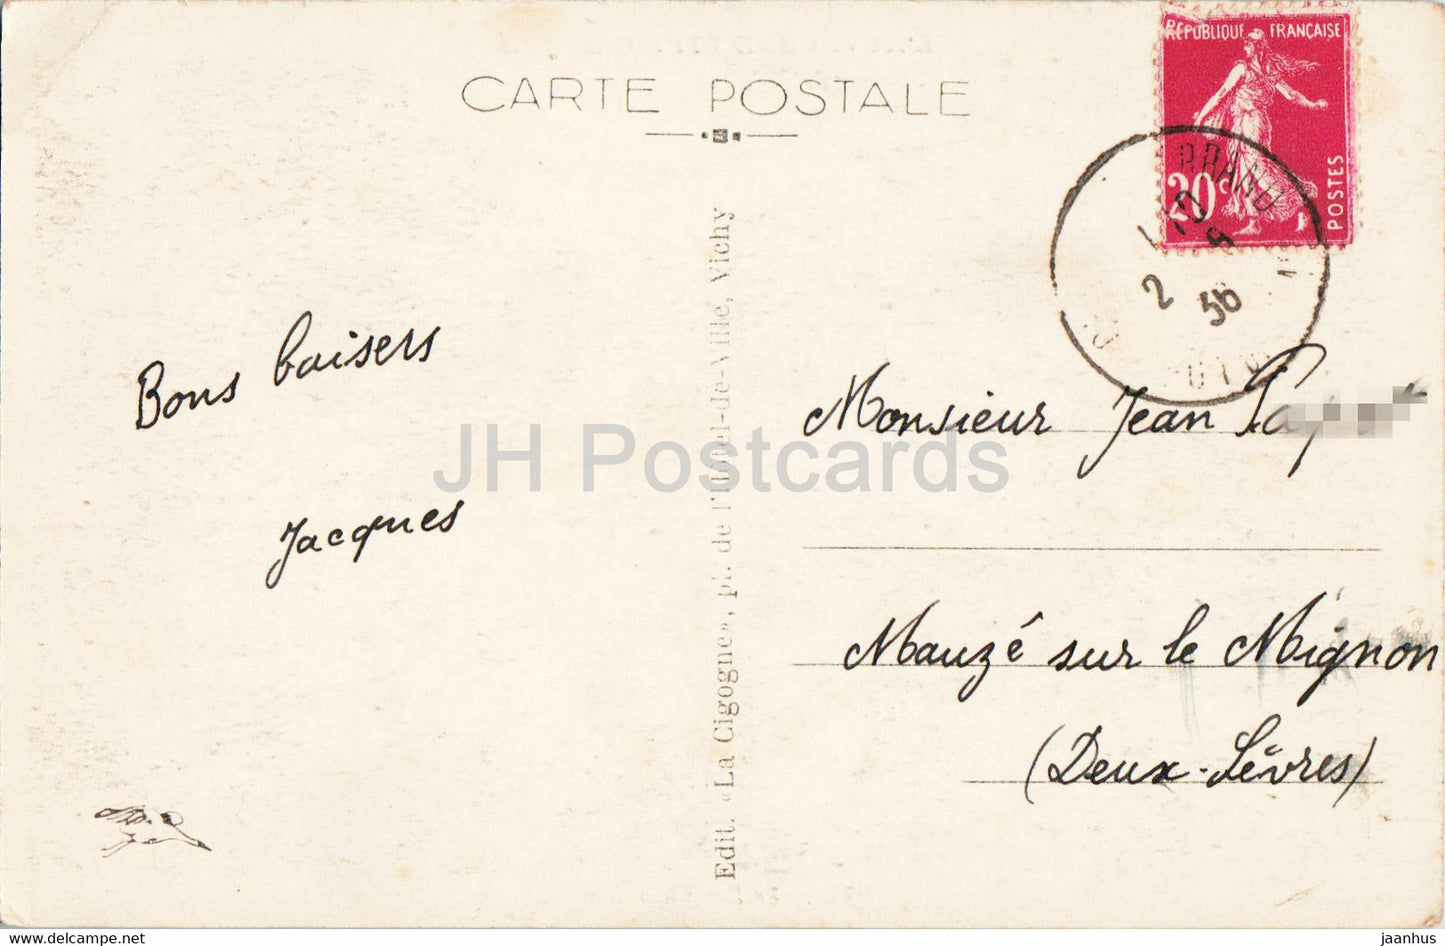 Le Lac Chambon - L'Auvergne Pittoresque - 3375 - carte postale ancienne - 1936 - France - occasion